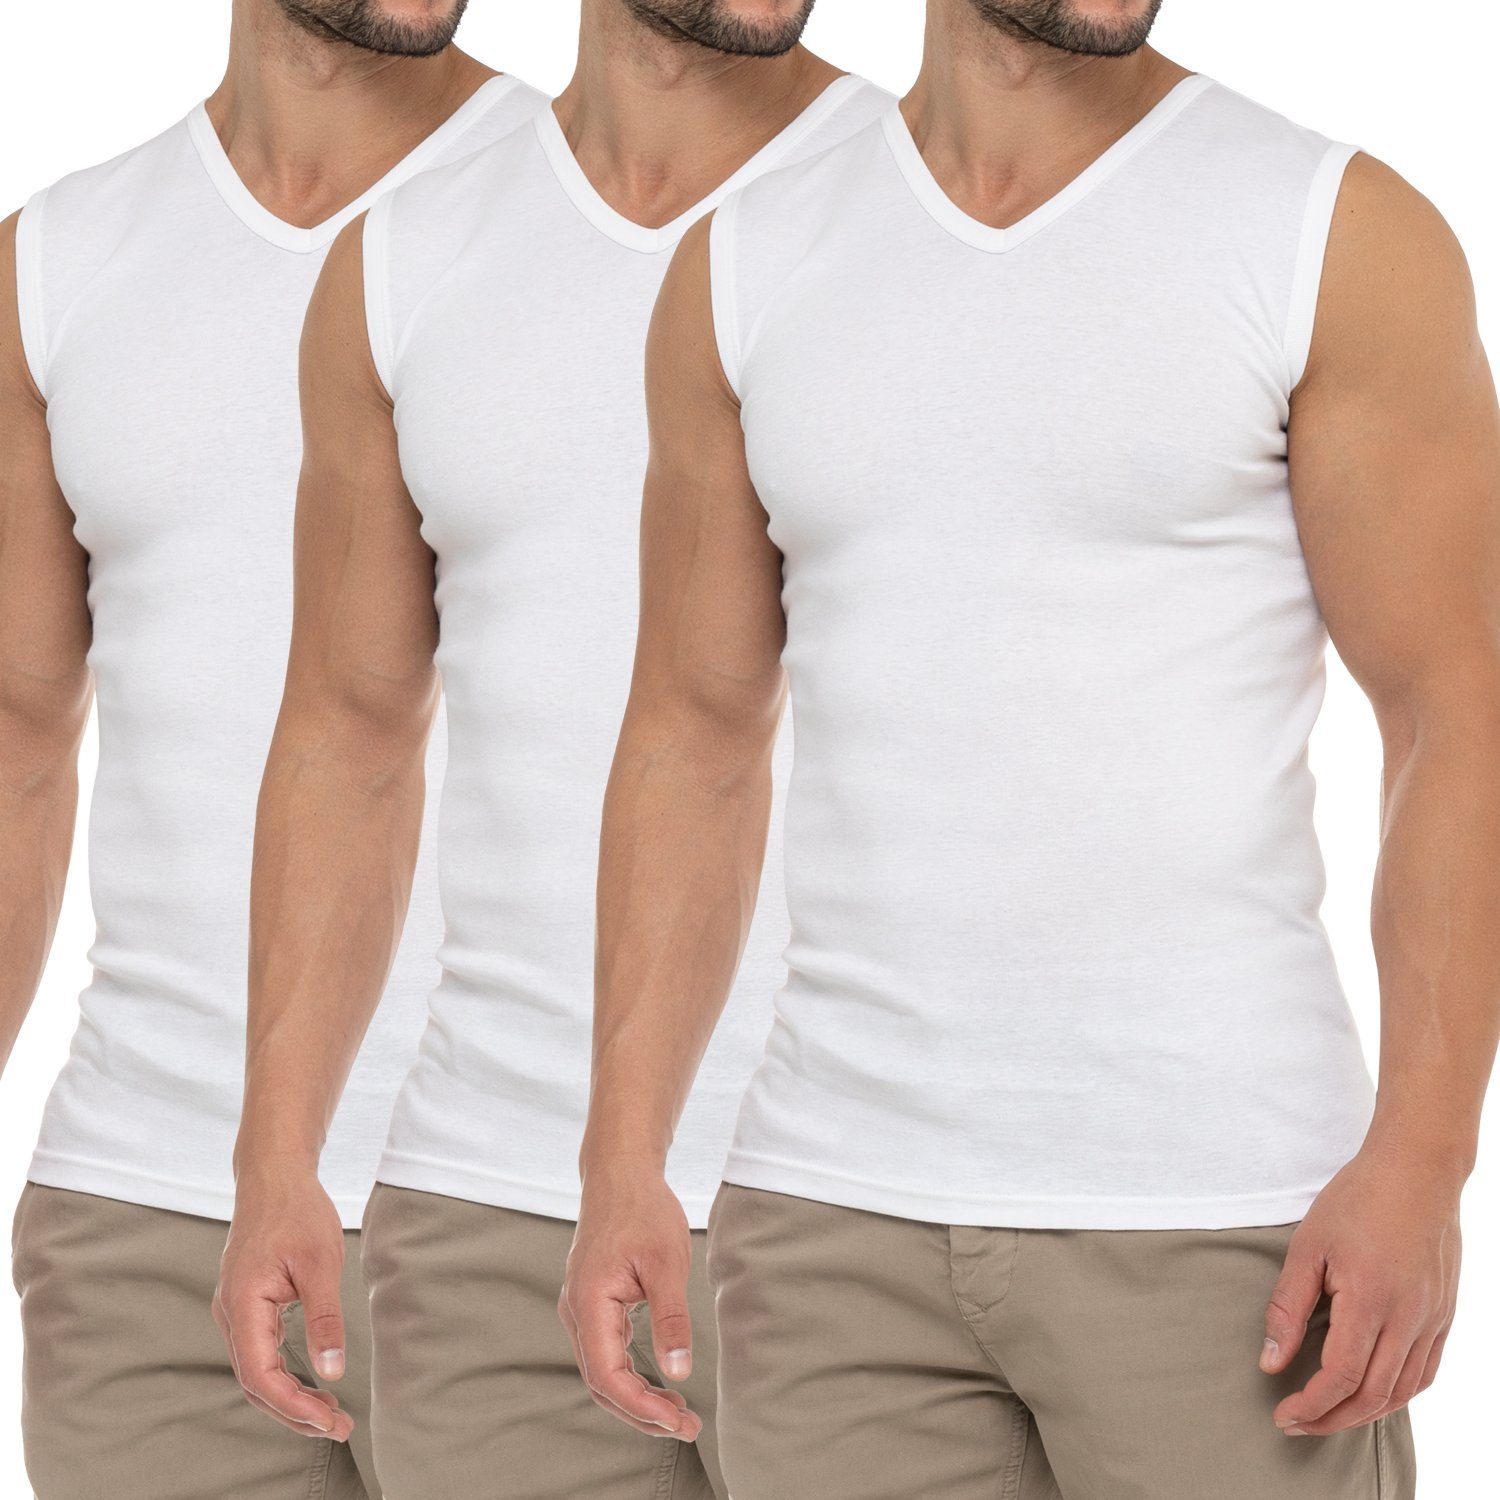 celodoro (3er Herren Muscle Pack) V-Neck Weiss Shirt Business Unterhemd Muskelshirt